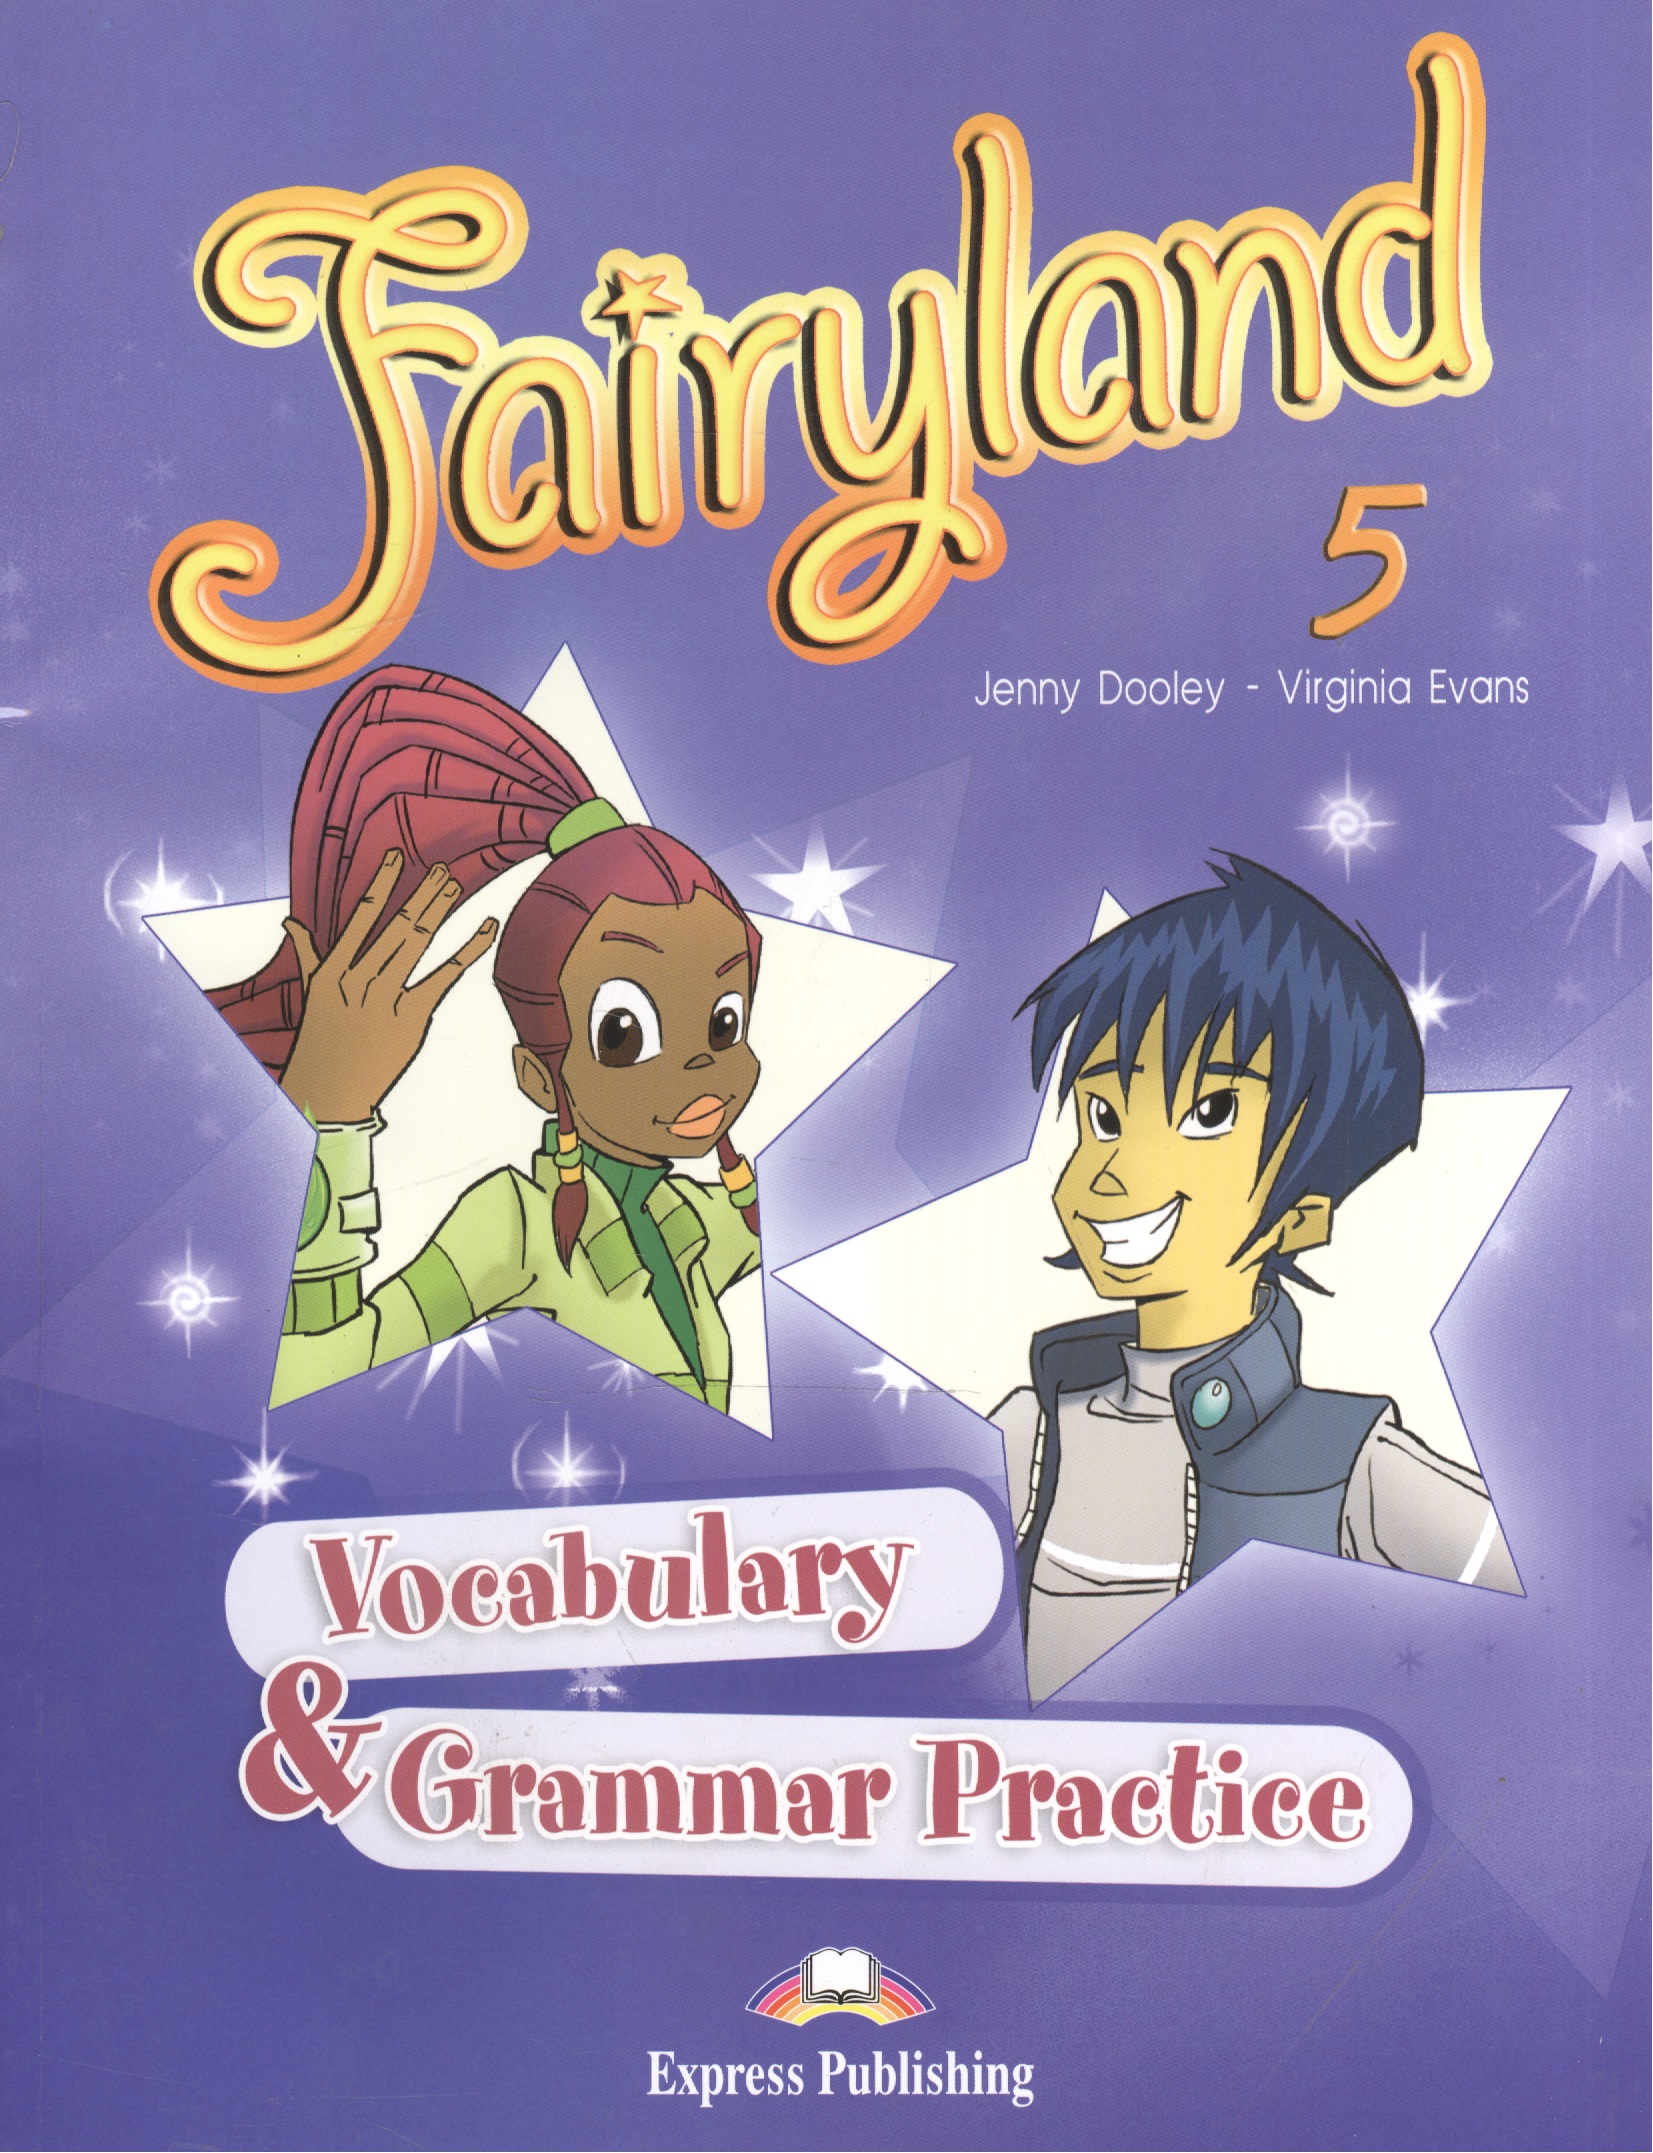 Эванс Вирджиния Fairyland 5. Vocabulary & Grammar Practice. Сборник лексических и грамматических упражнений эванс вирджиния fairyland 5 vocabulary